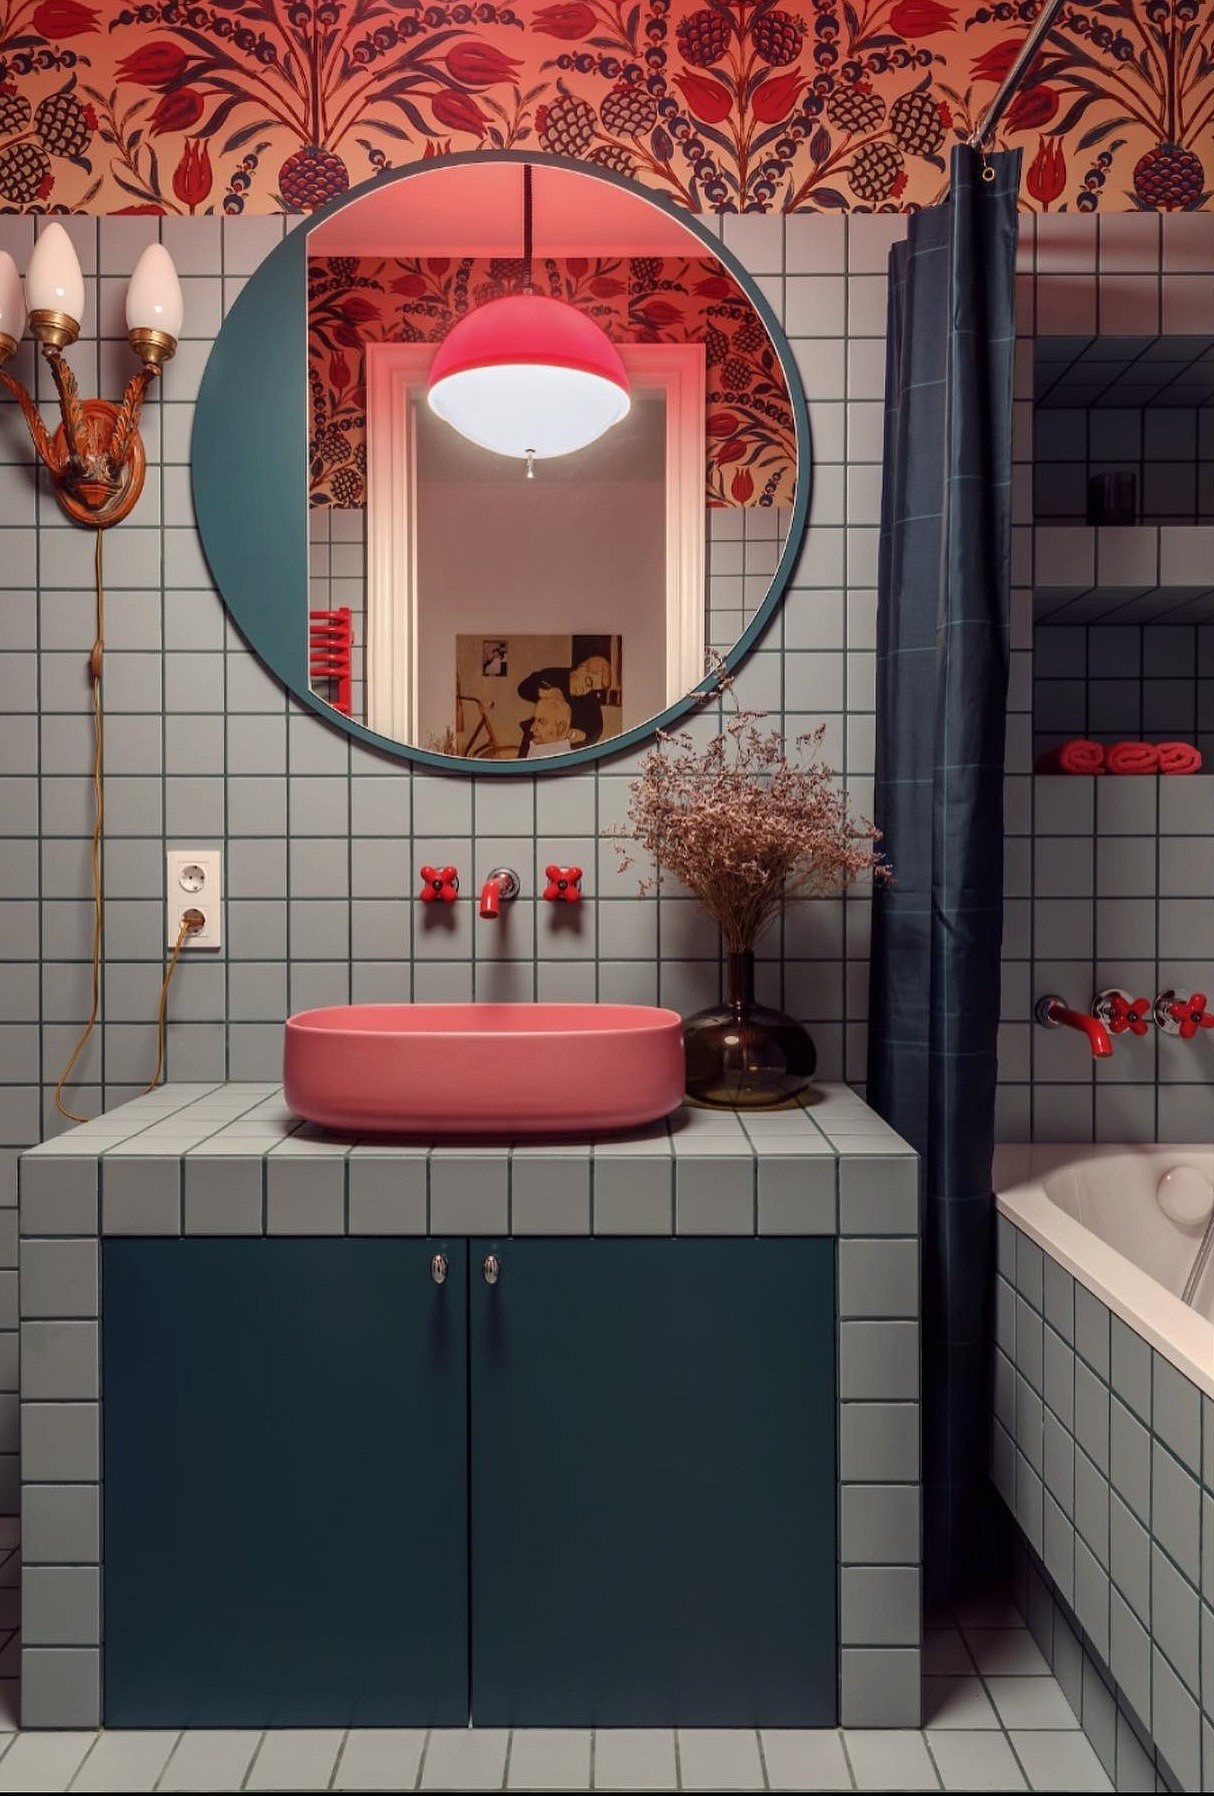 9 необычных решений для ванной комнаты из проектов дизайнеров21